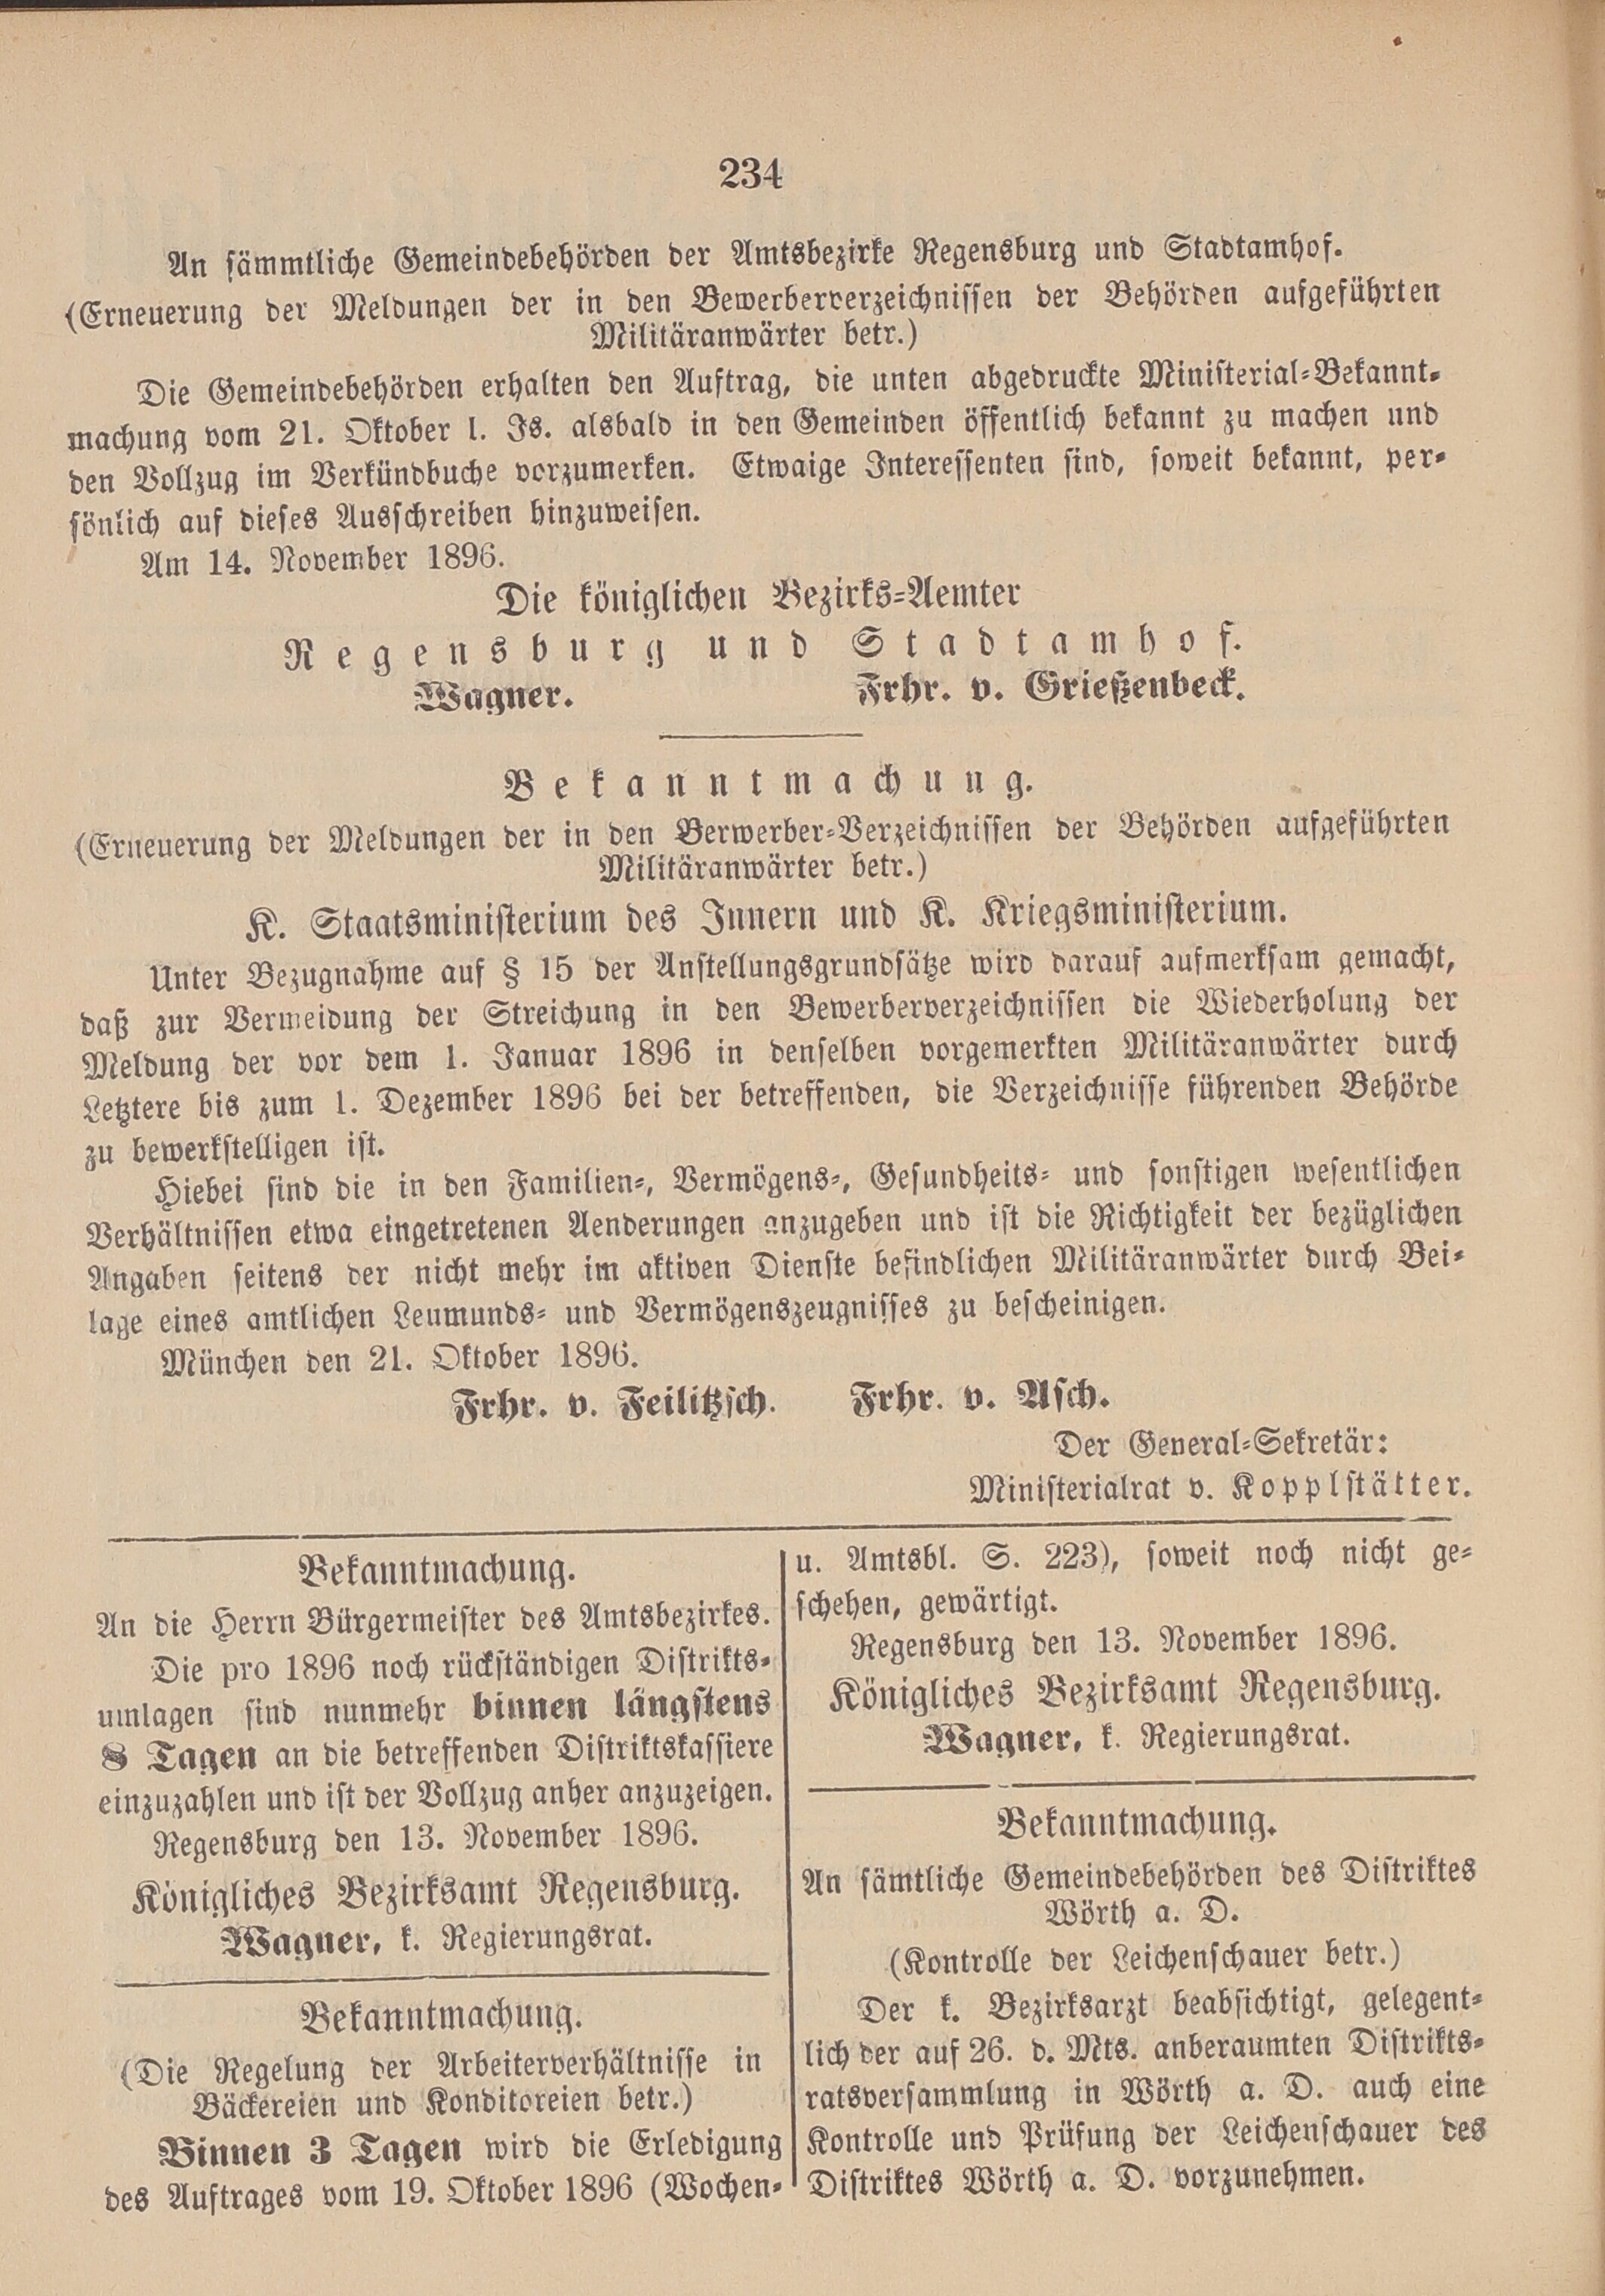 2. amtsblatt-stadtamhof-regensburg-1896-11-15-n46_2450